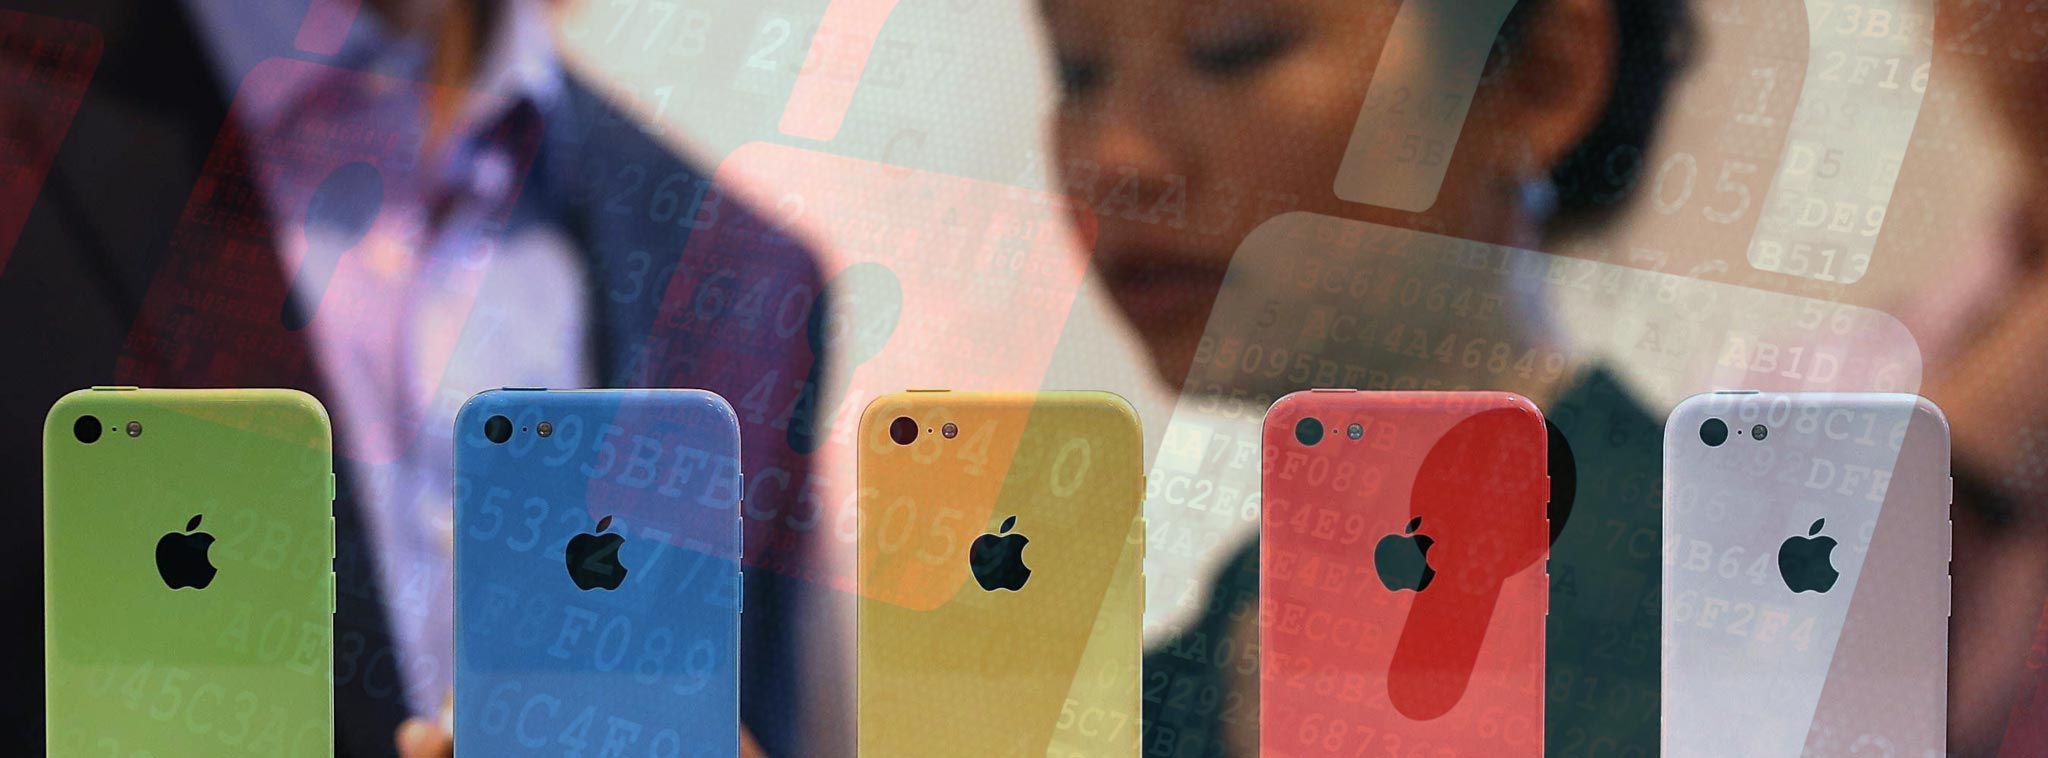 FBI đã chi hơn 900 ngàn đô để hack được chiếc iPhone trong vụ San Bernardino